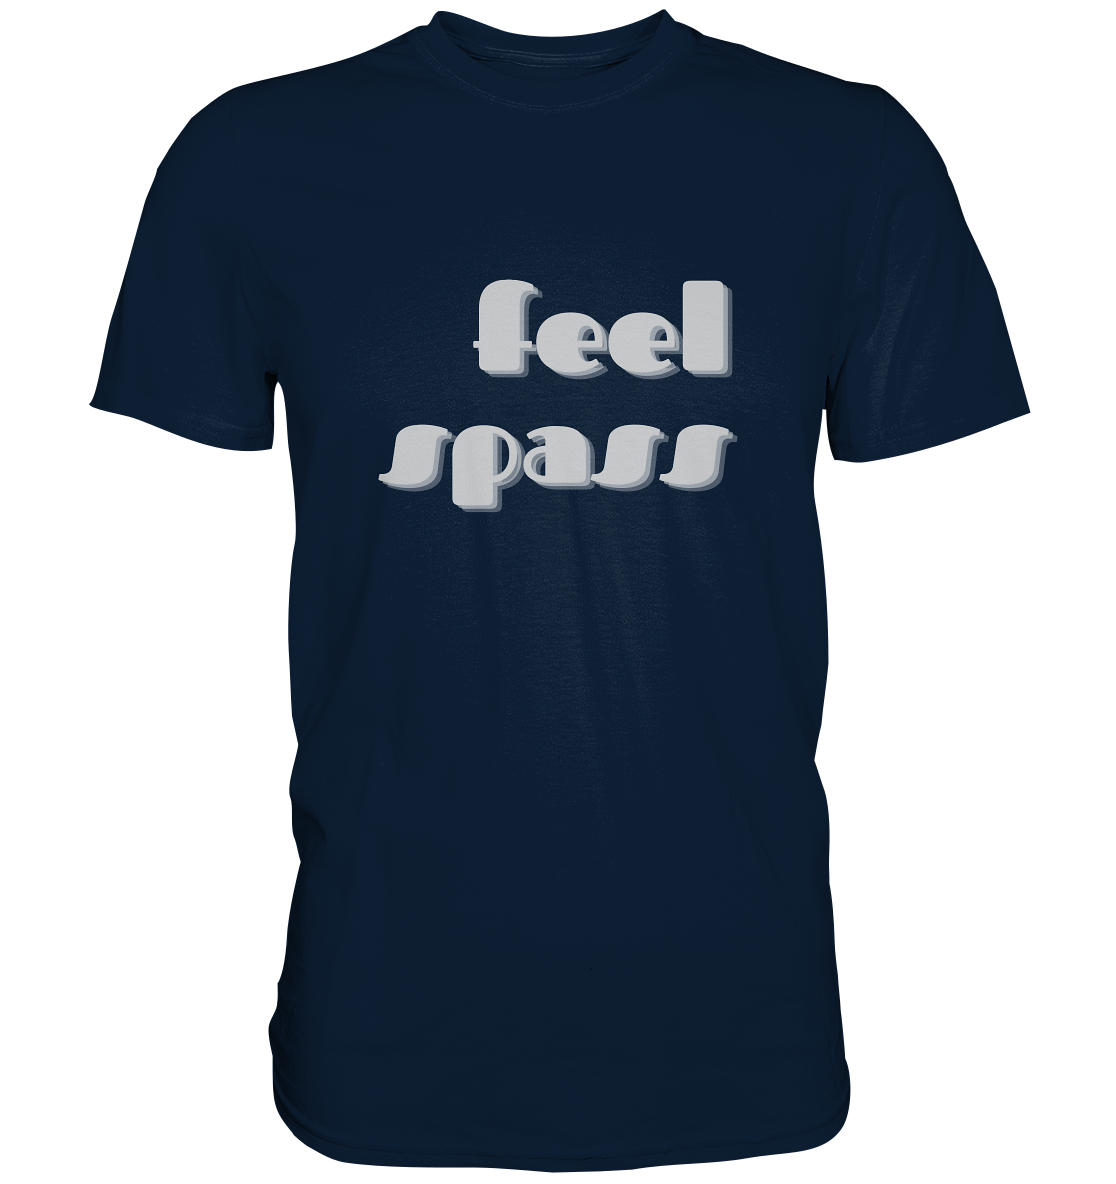 T-Shirt Herren, Rundhals, mit Aufdruck "Feel Spass", dunkel blau